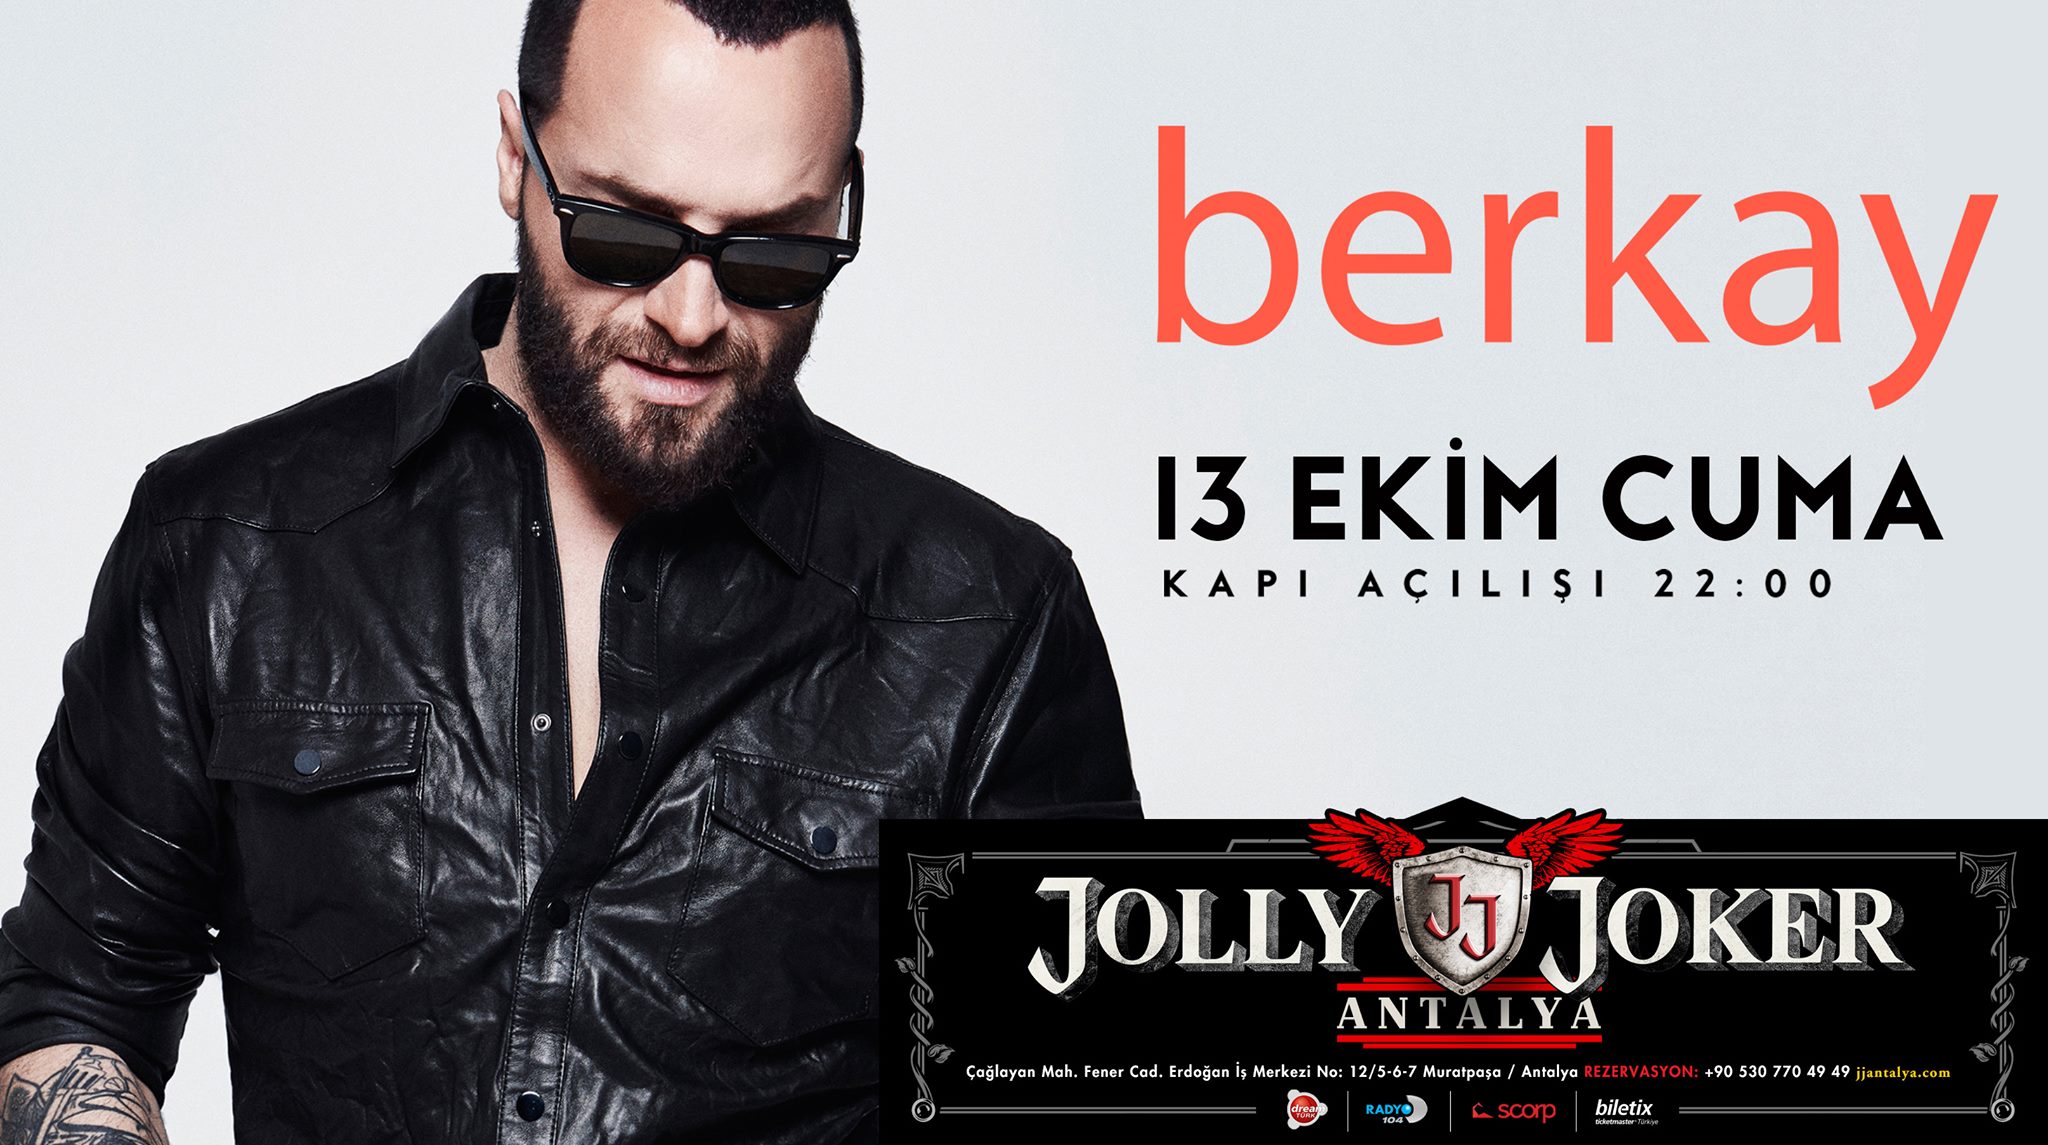 Концерт музыкального исполнителя Berkay пройдёт в Анталье 13 октября